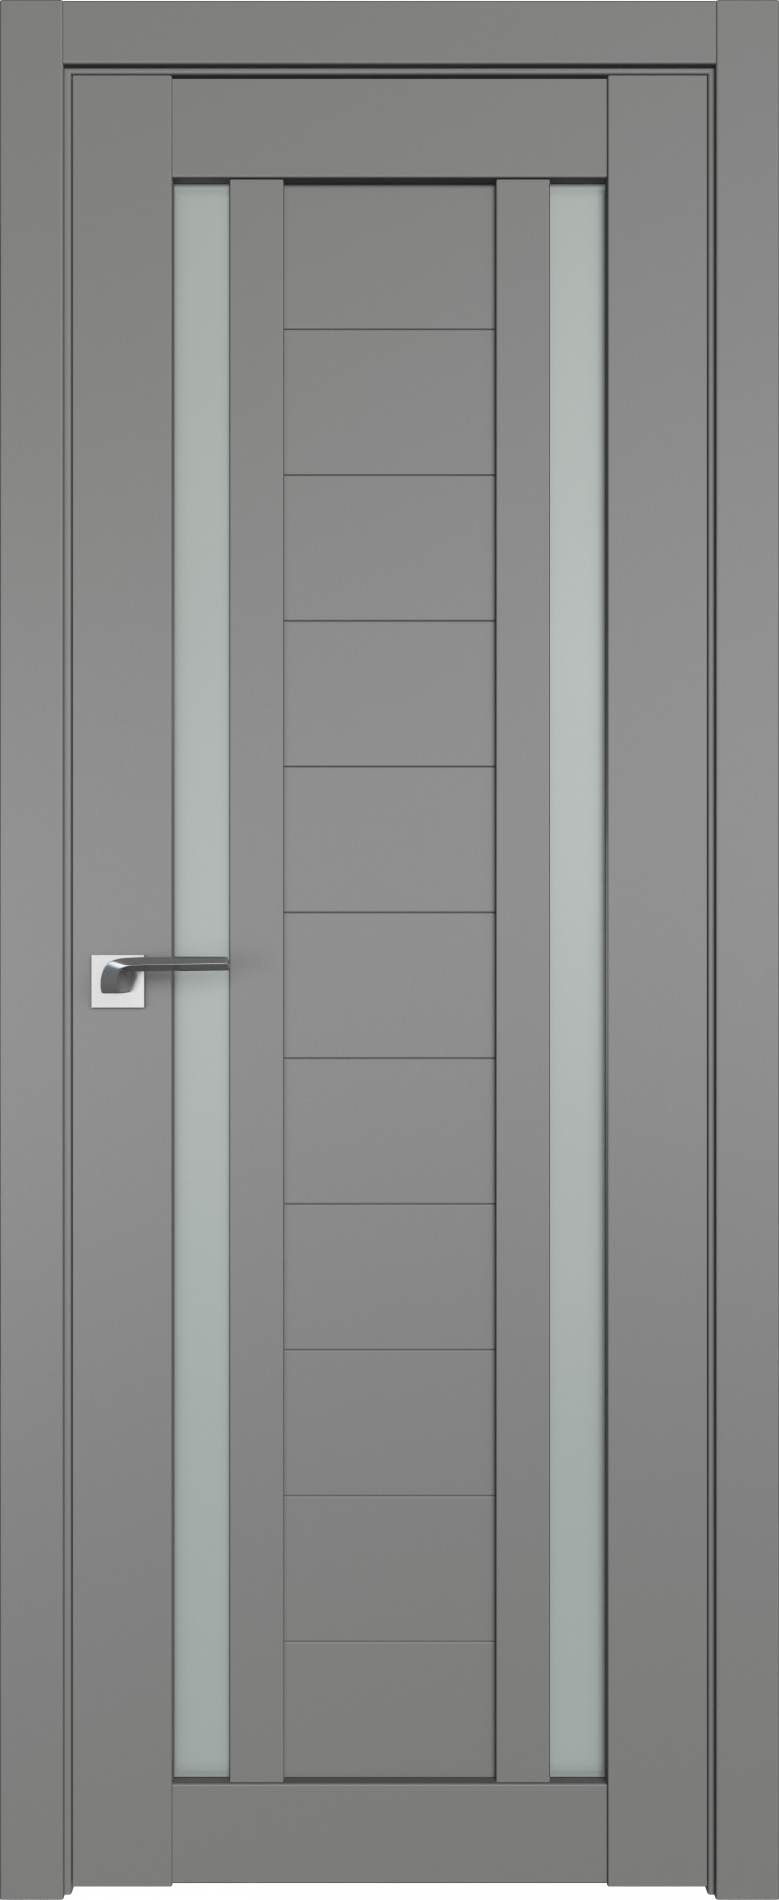 межкомнатные двери  Profil Doors 15U грей